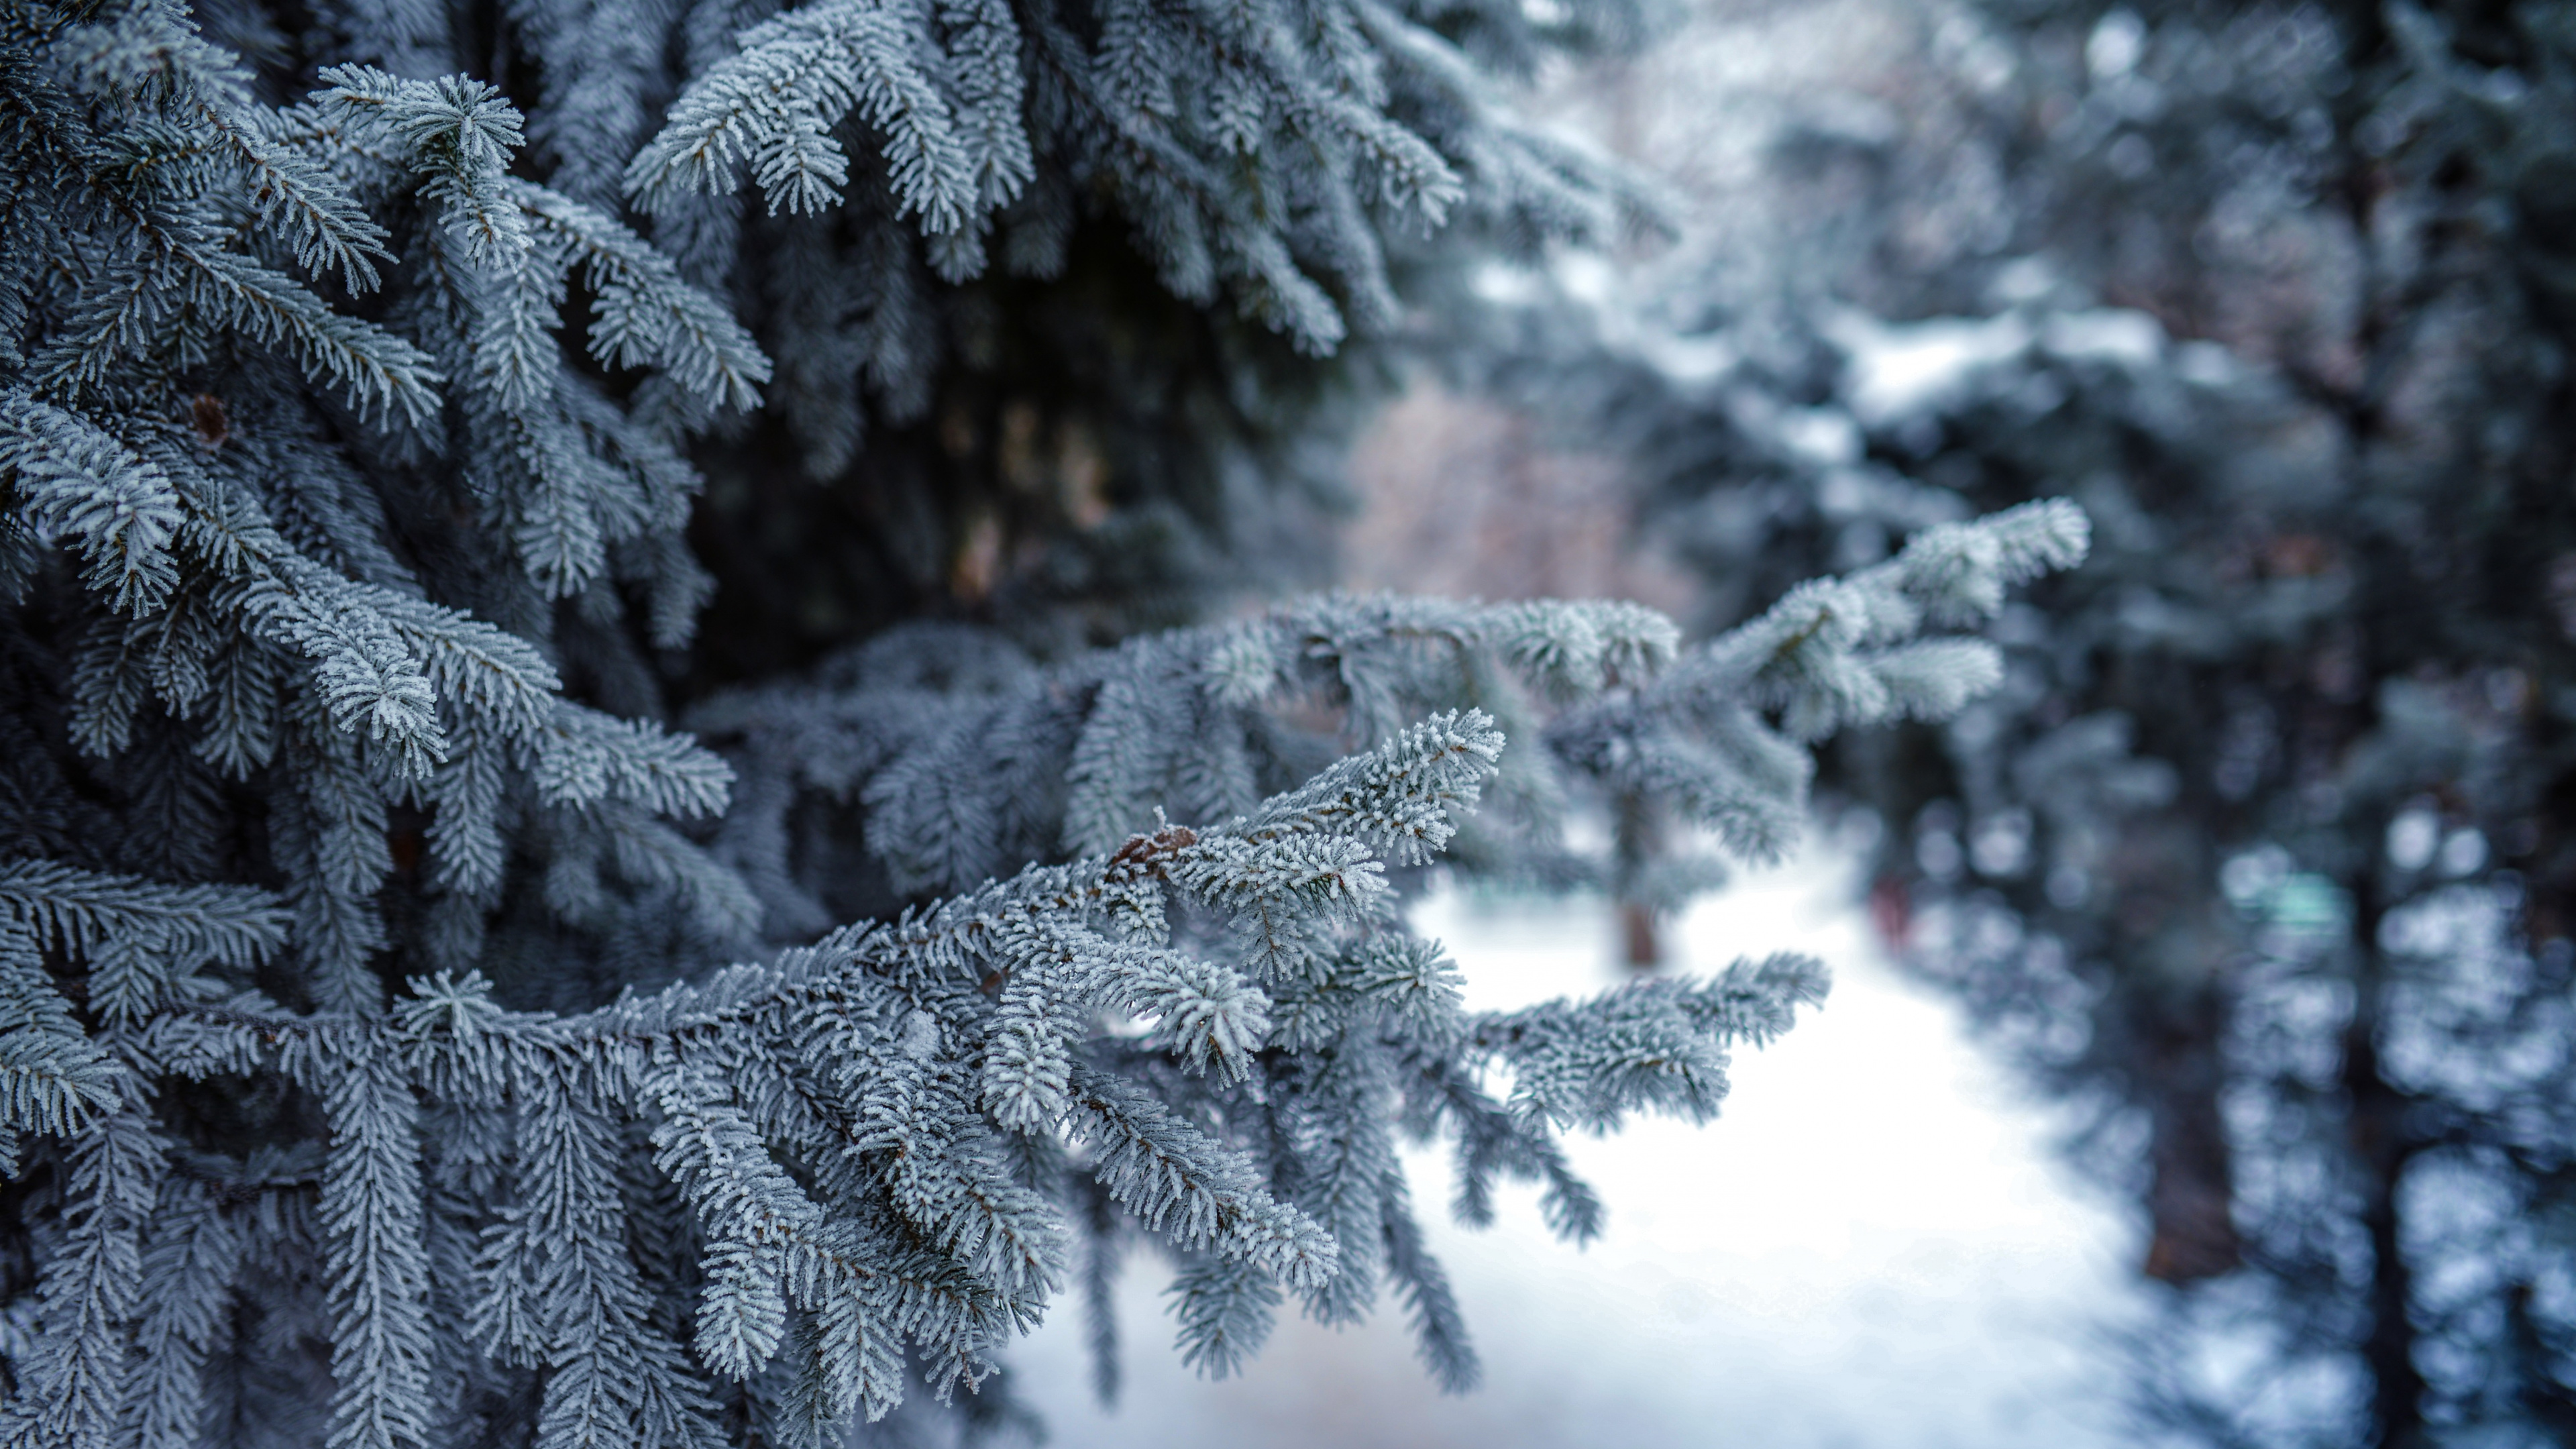 冬天, 冻结, 温带针叶林, 性质, 木本植物 壁纸 3840x2160 允许